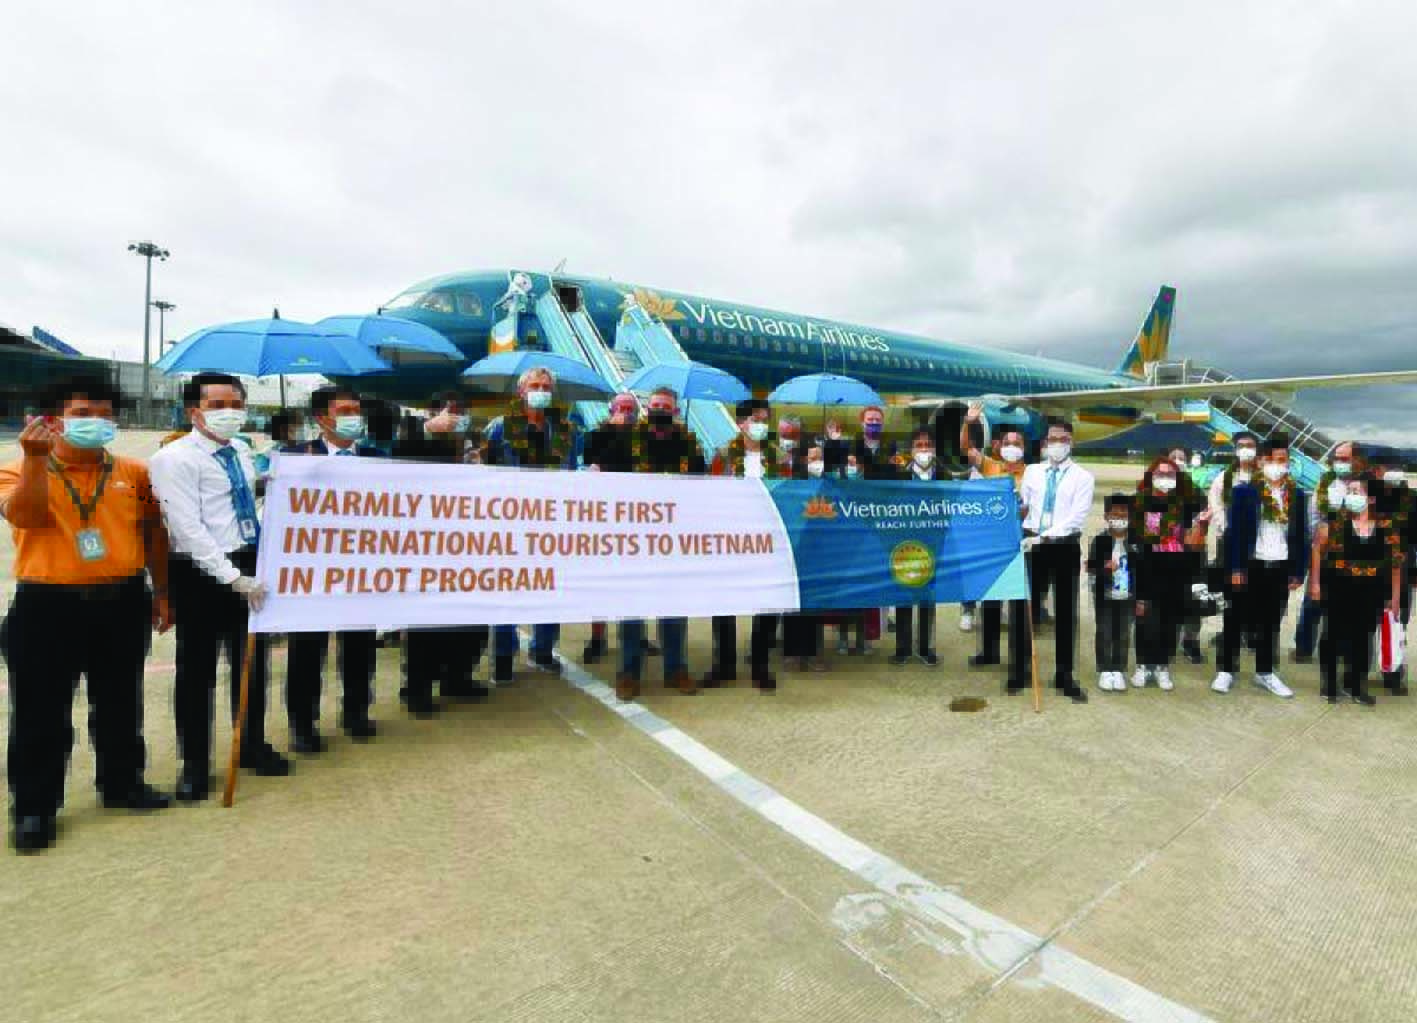  “Mở cửa bầu trời” là bước khởi đầu tích cực phục hồi ngành du lịch. Ảnh: Những hành khách quốc tế trên chuyến bay của Vietnam Airlines đến Việt Nam.